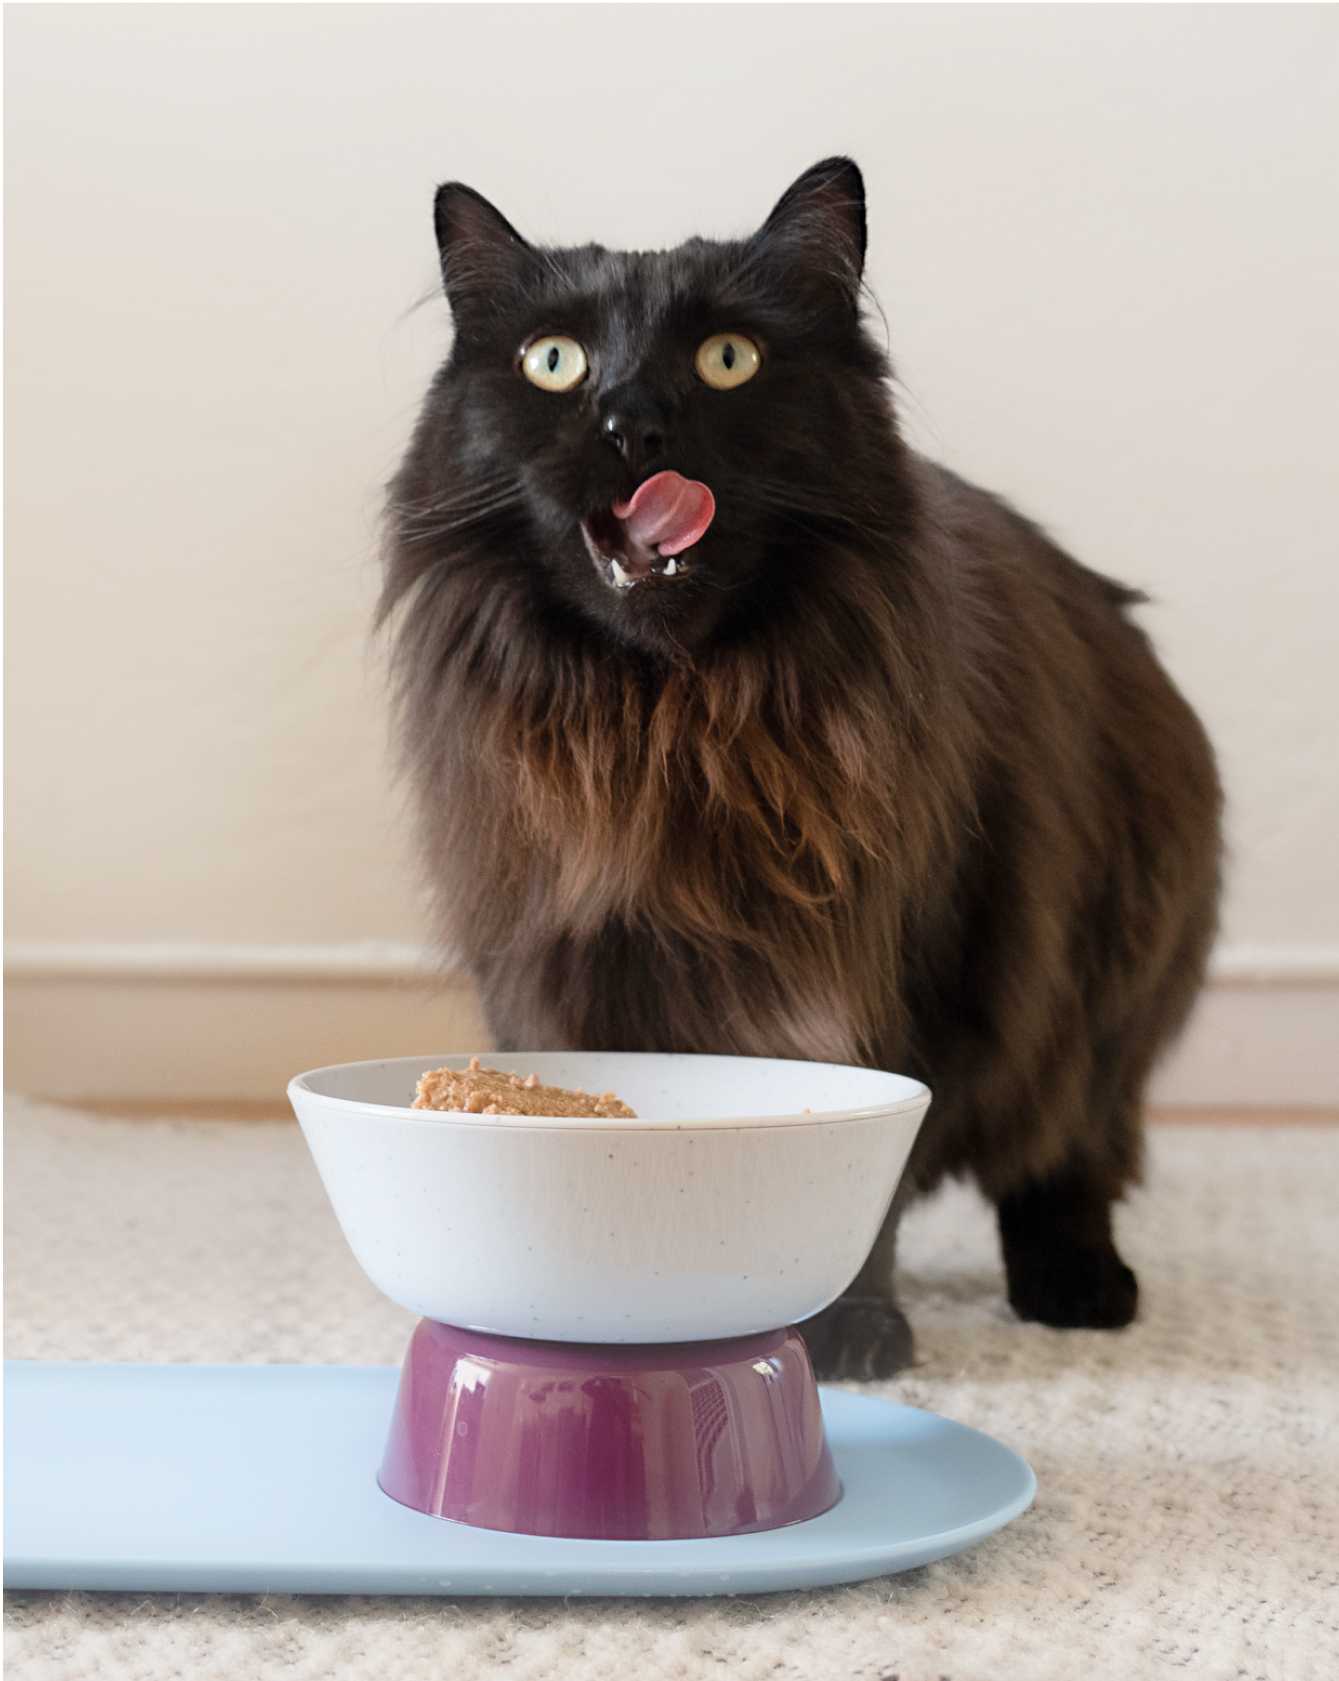 Cat eating Cat Person food in Mesa Bowl